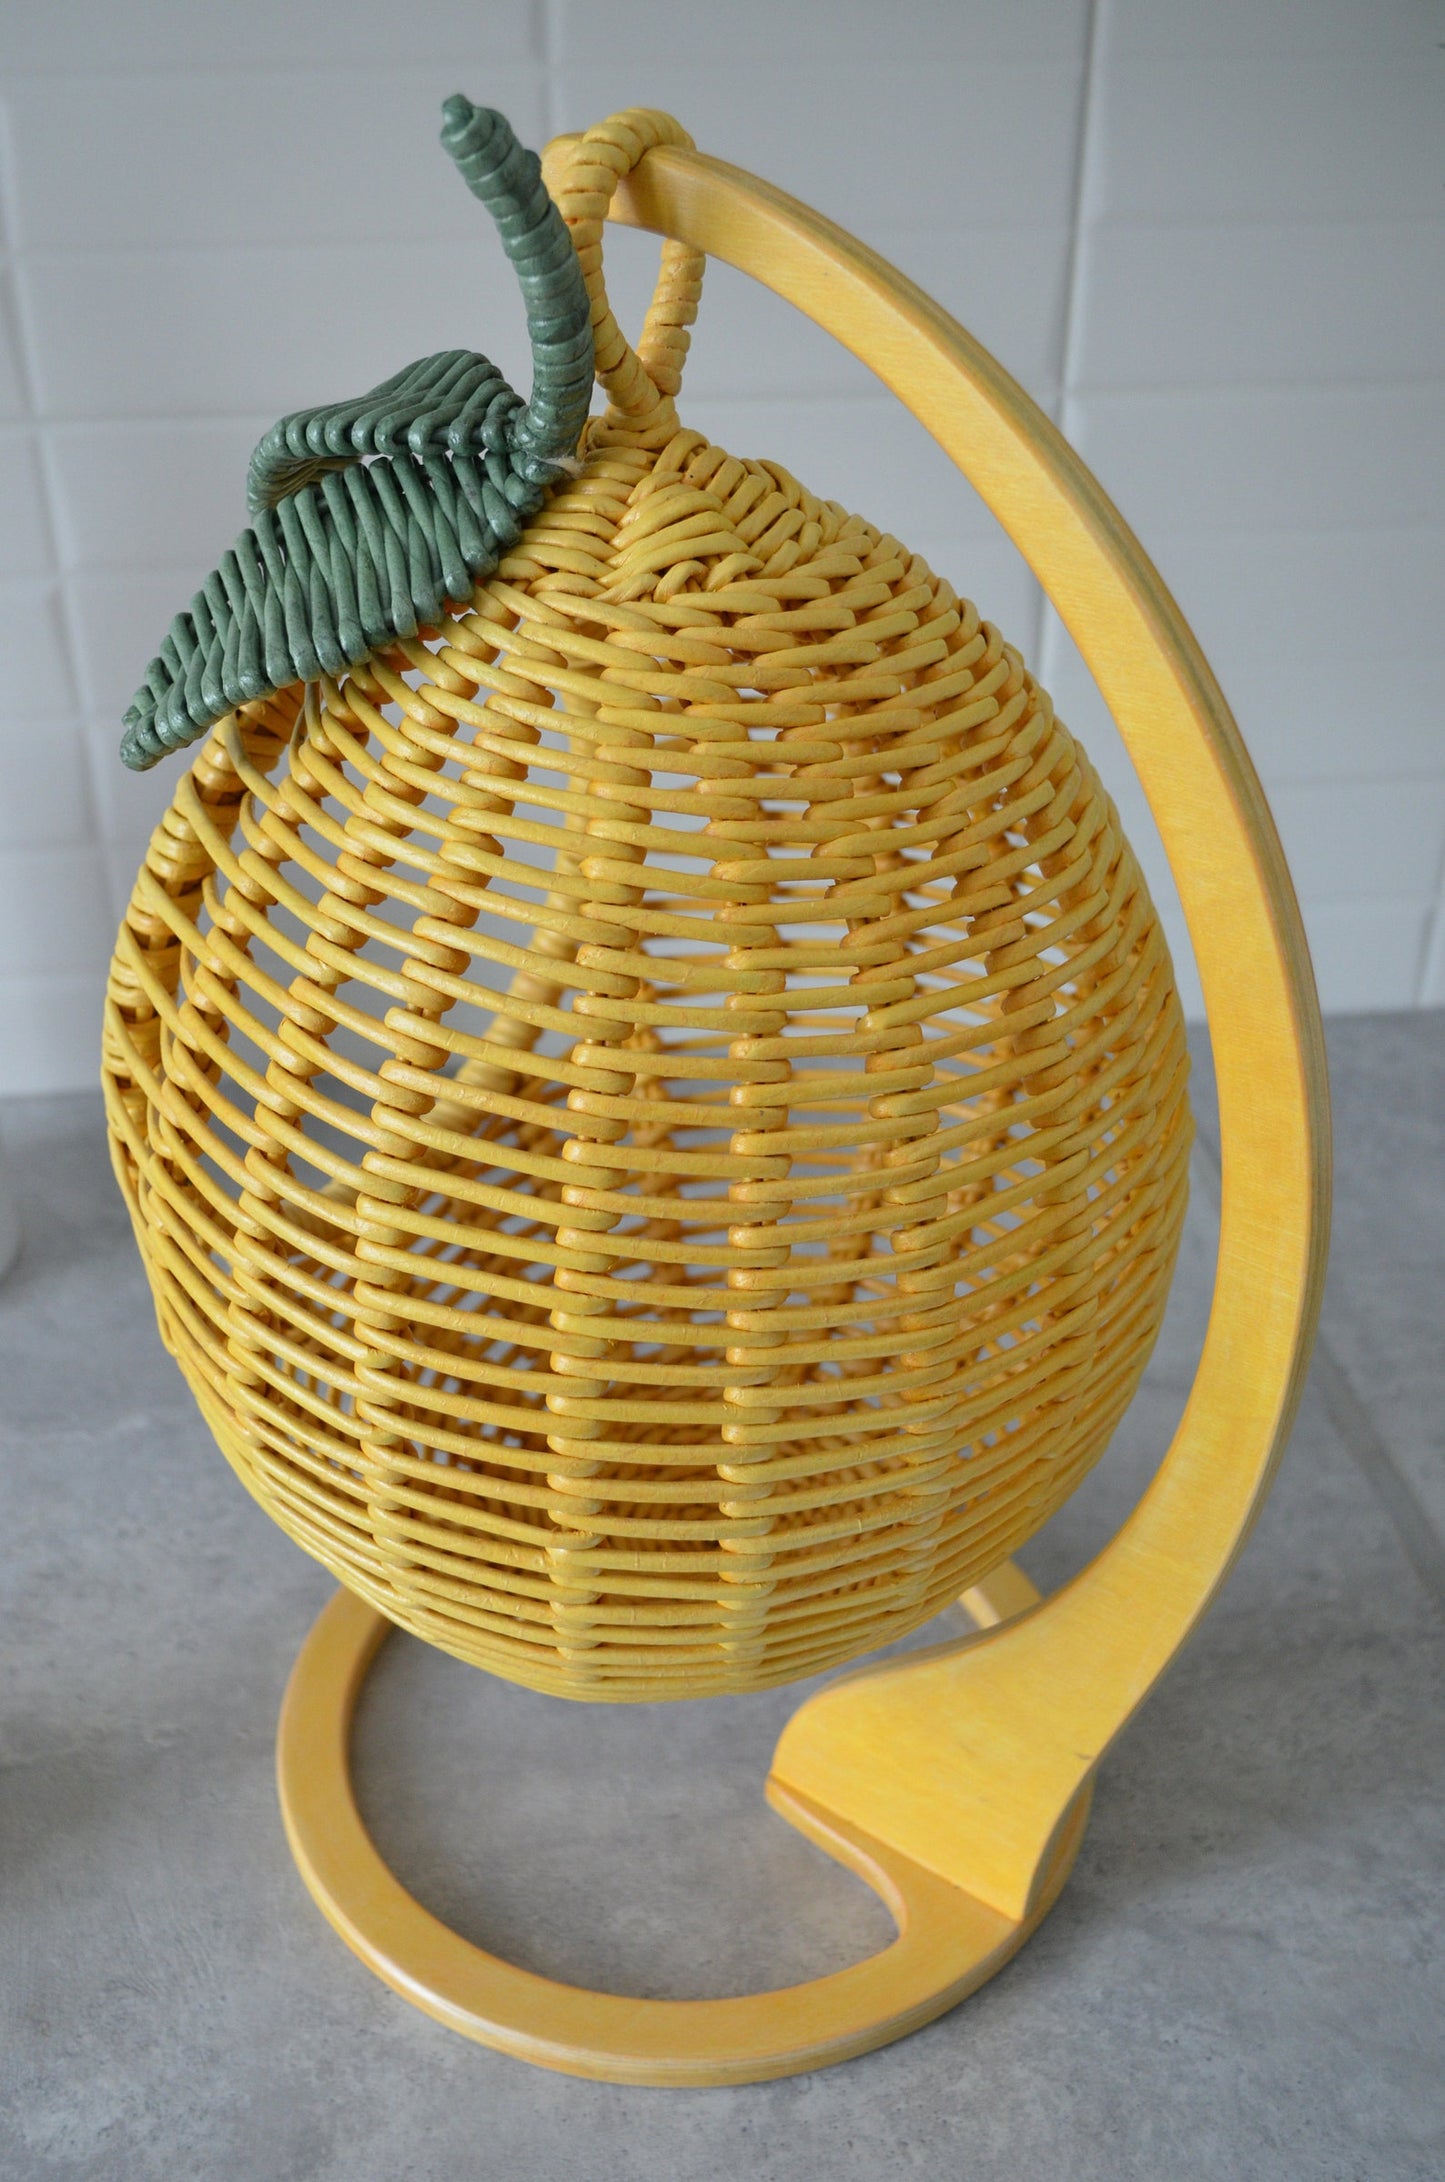 果物を収納するフルーツバスケット 枝編み細工のレモン型